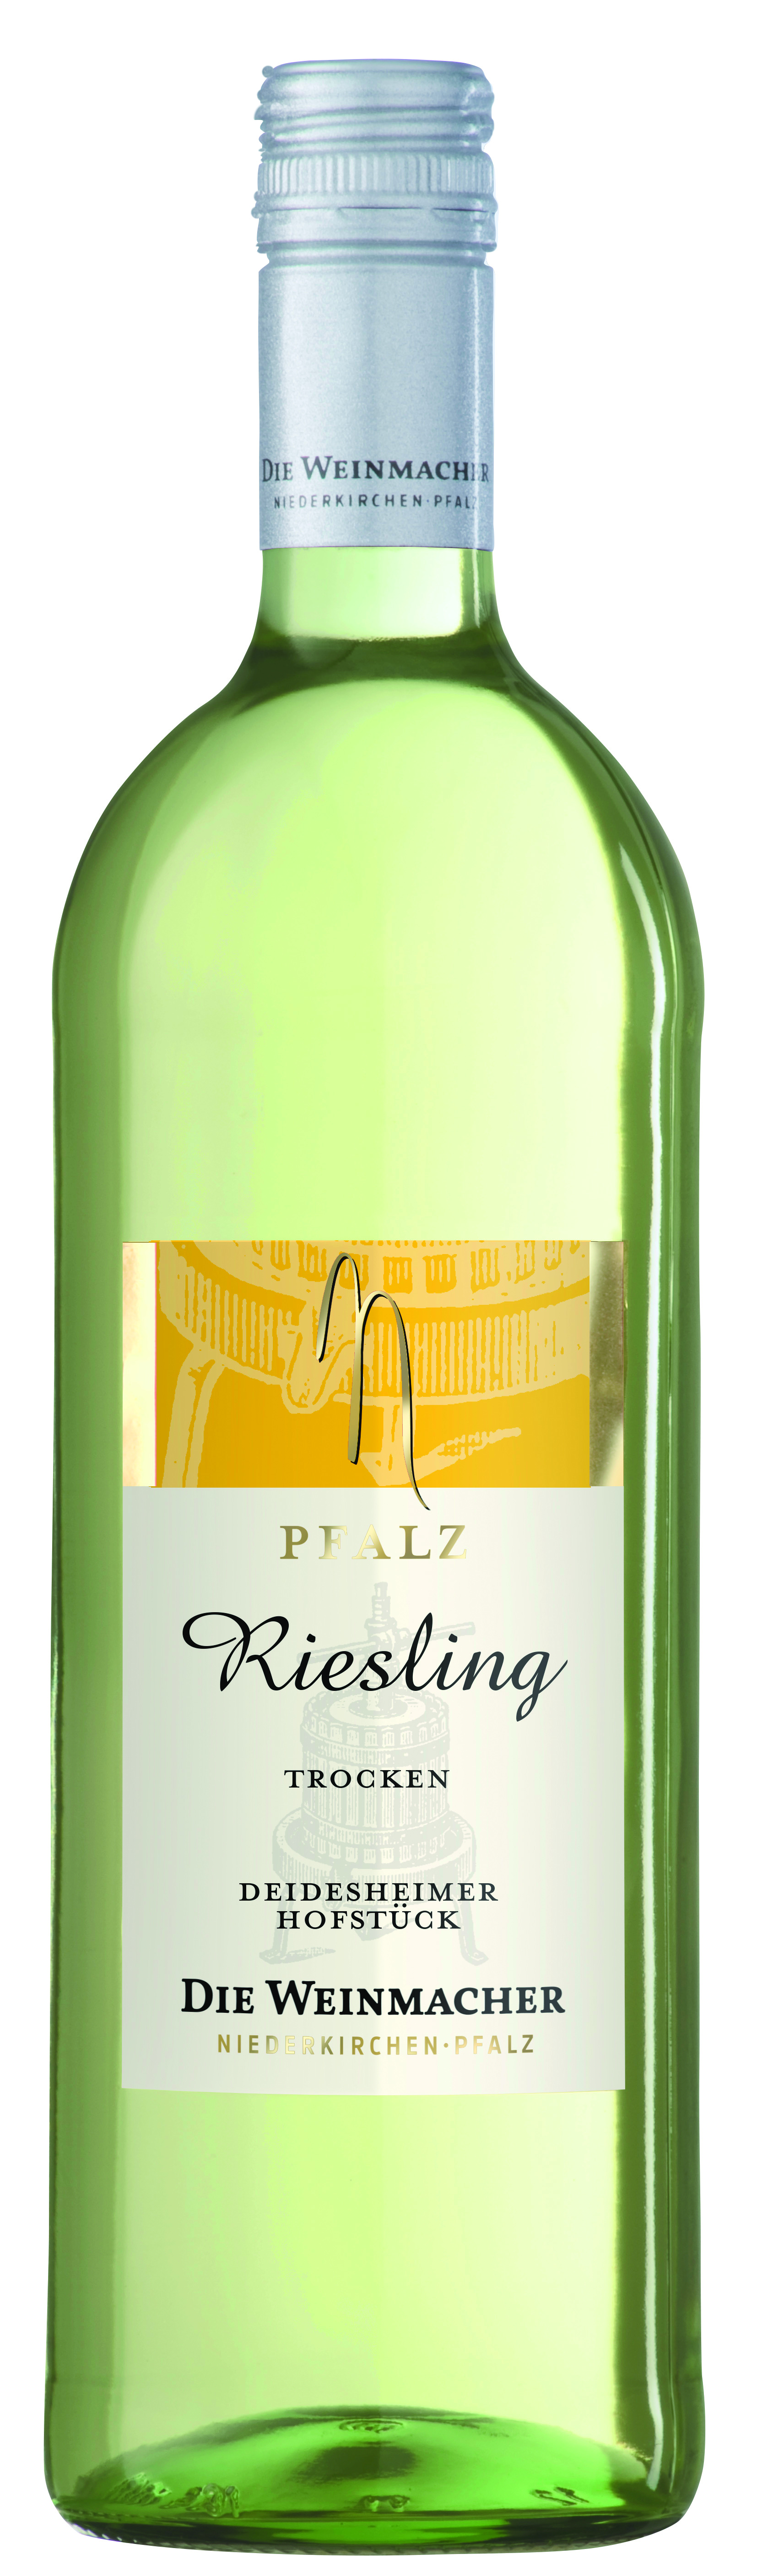 1,0 L | Die Pfalz | ▻ Pfälzer Riesling trocken Hofstück Wein Deidesheimer Weinmacher